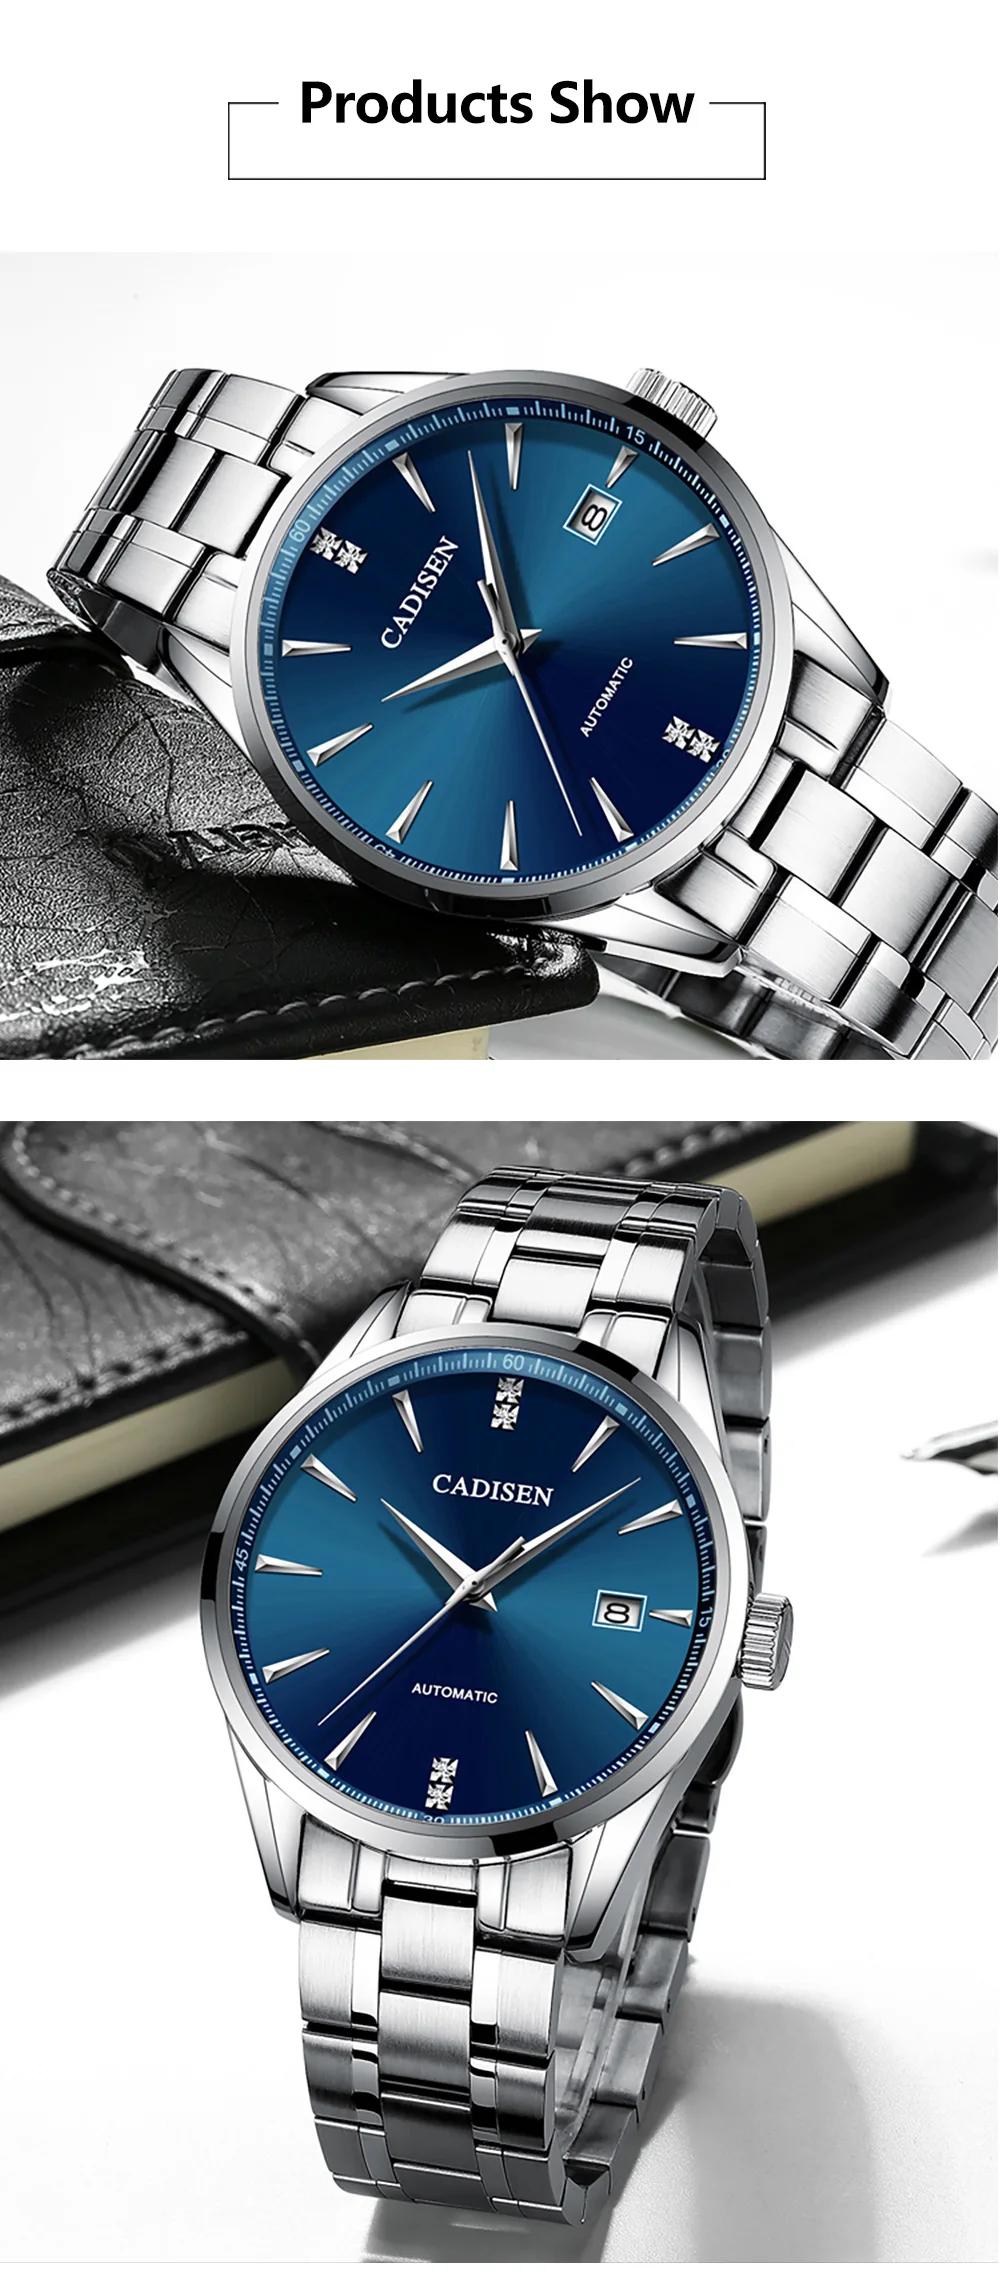 CADISEN Movt Nh35 часы мужские брендовые модельные модные механические наручные часы из нержавеющей стали Relogio Masculino 5ATM водонепроницаемые C1033